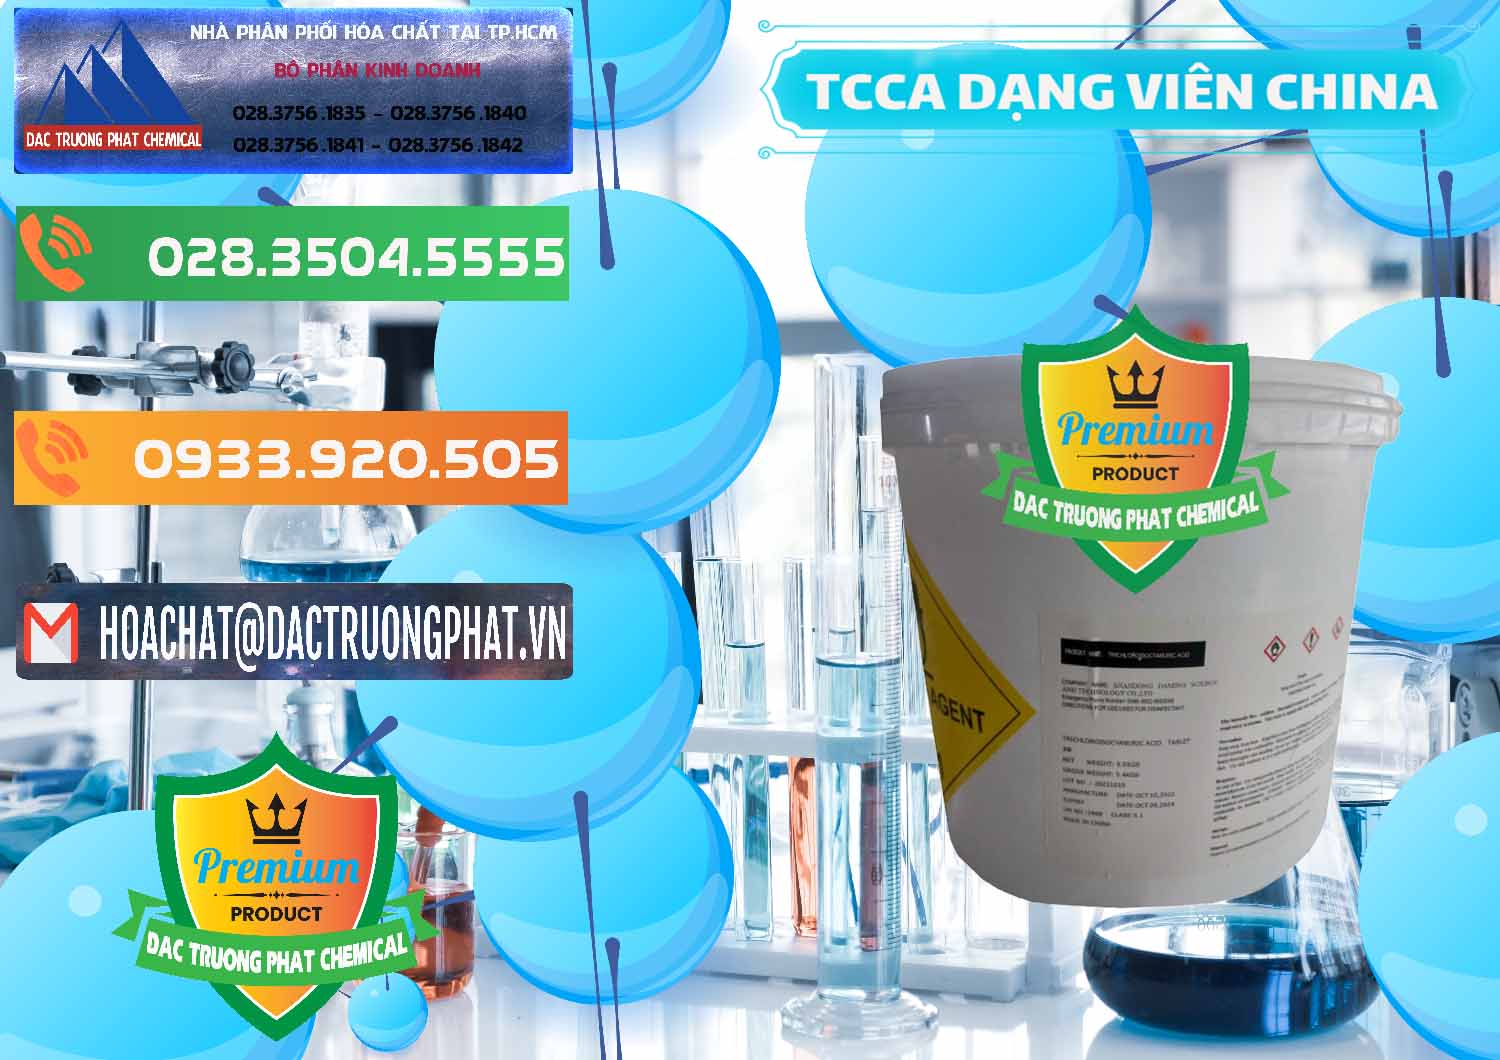 Nhập khẩu _ bán TCCA - Acid Trichloroisocyanuric Dạng Viên Thùng 5kg Trung Quốc China - 0379 - Công ty kinh doanh _ cung cấp hóa chất tại TP.HCM - hoachatxulynuoc.com.vn